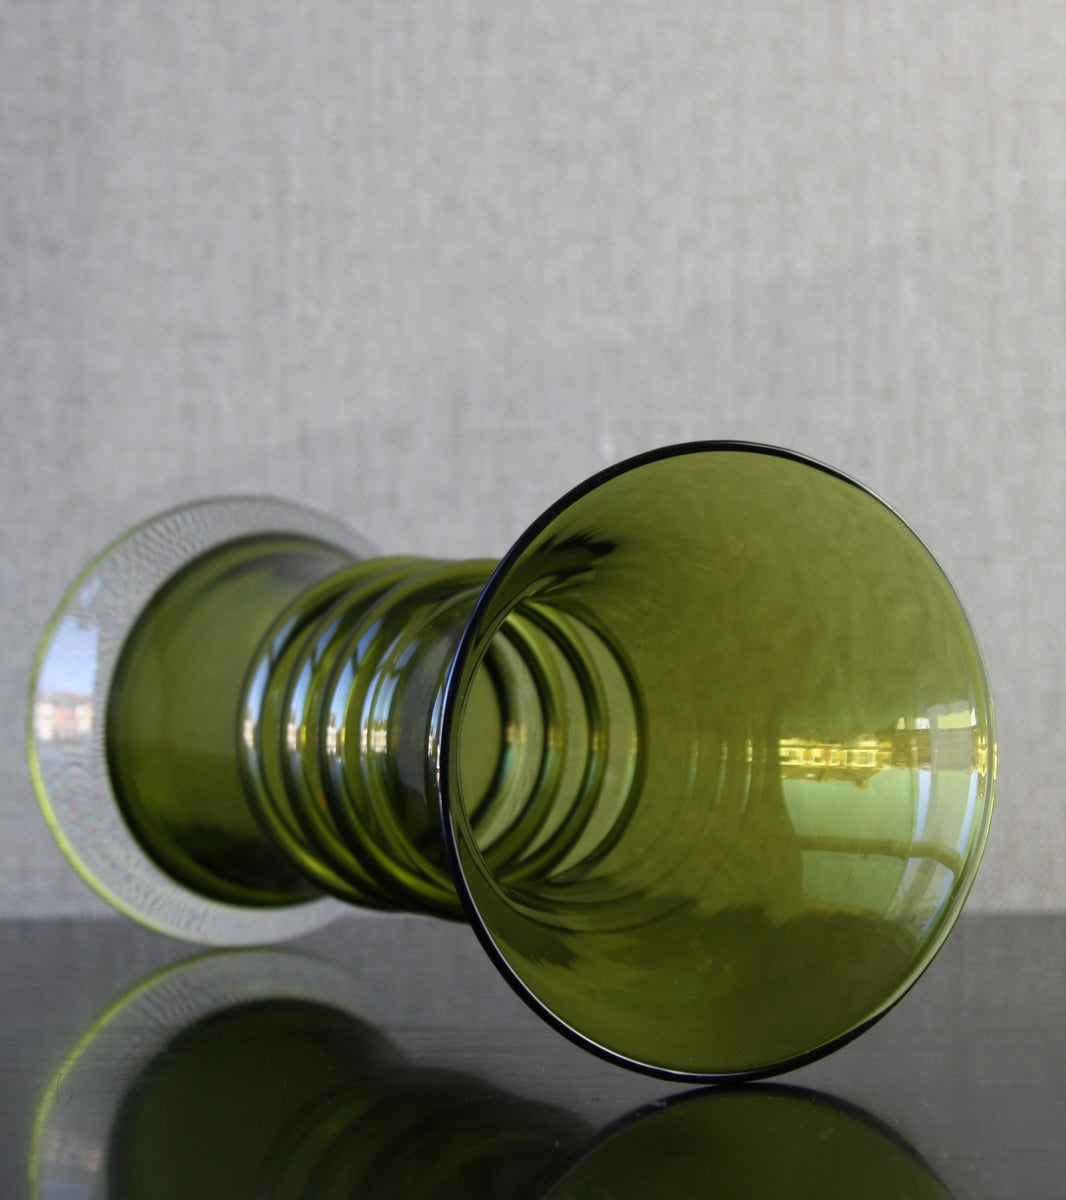 Olive Green Model 1565 "Kielo" Vase / Tamara Aladin, 1974